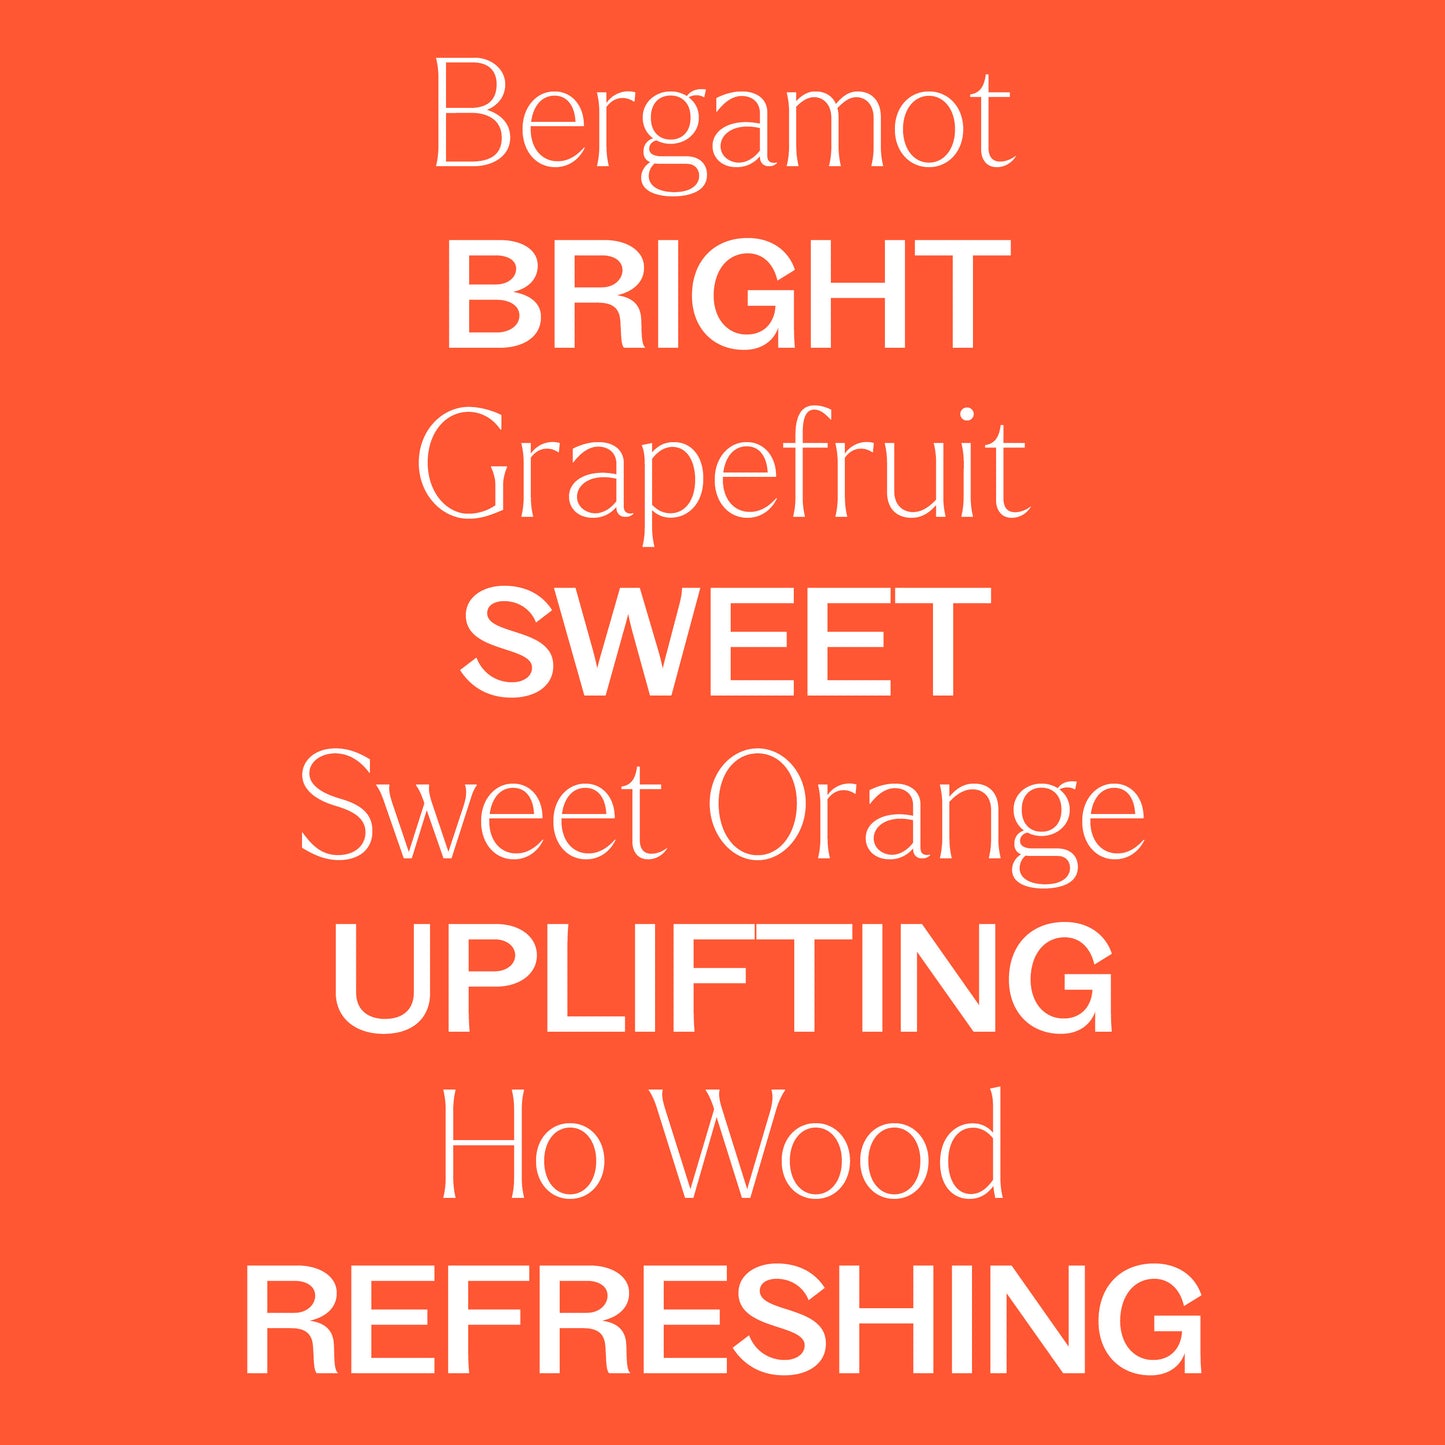 Bergamot, grapefruit, sweet orange, ho wood. Bright, sweet, uplifting, refreshing